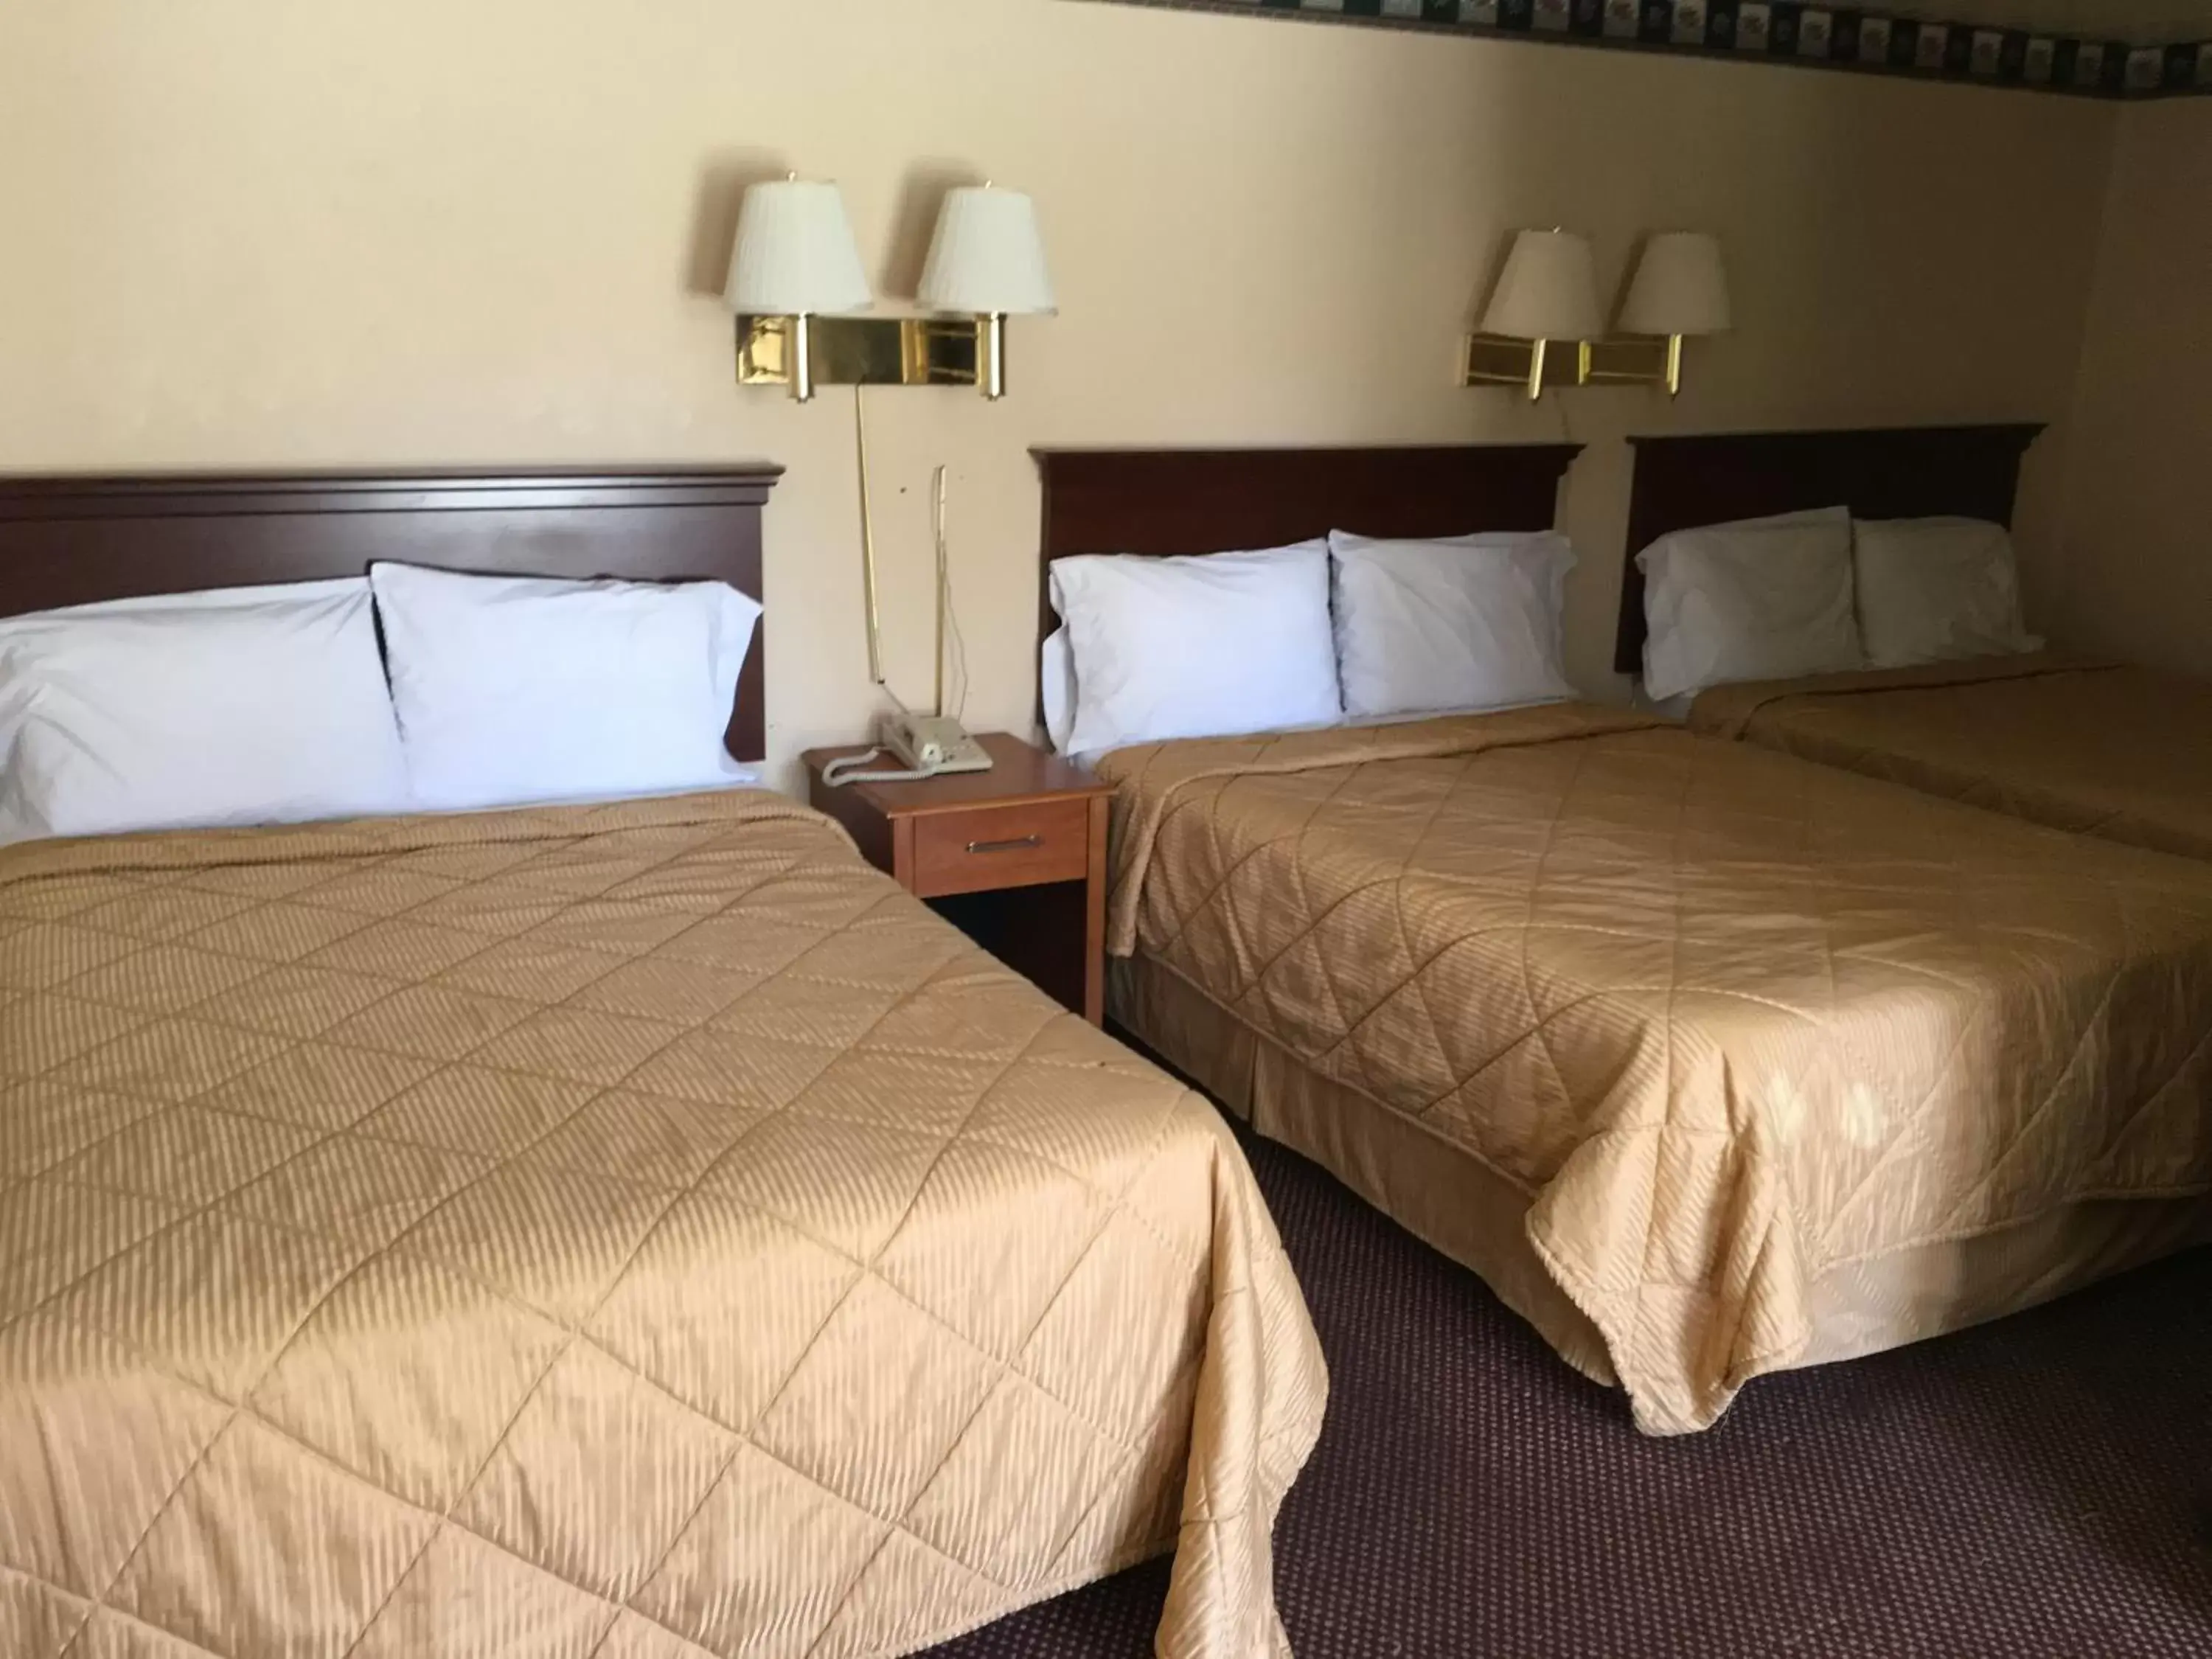 Bed in Red Carpet Inn - Gettysburg